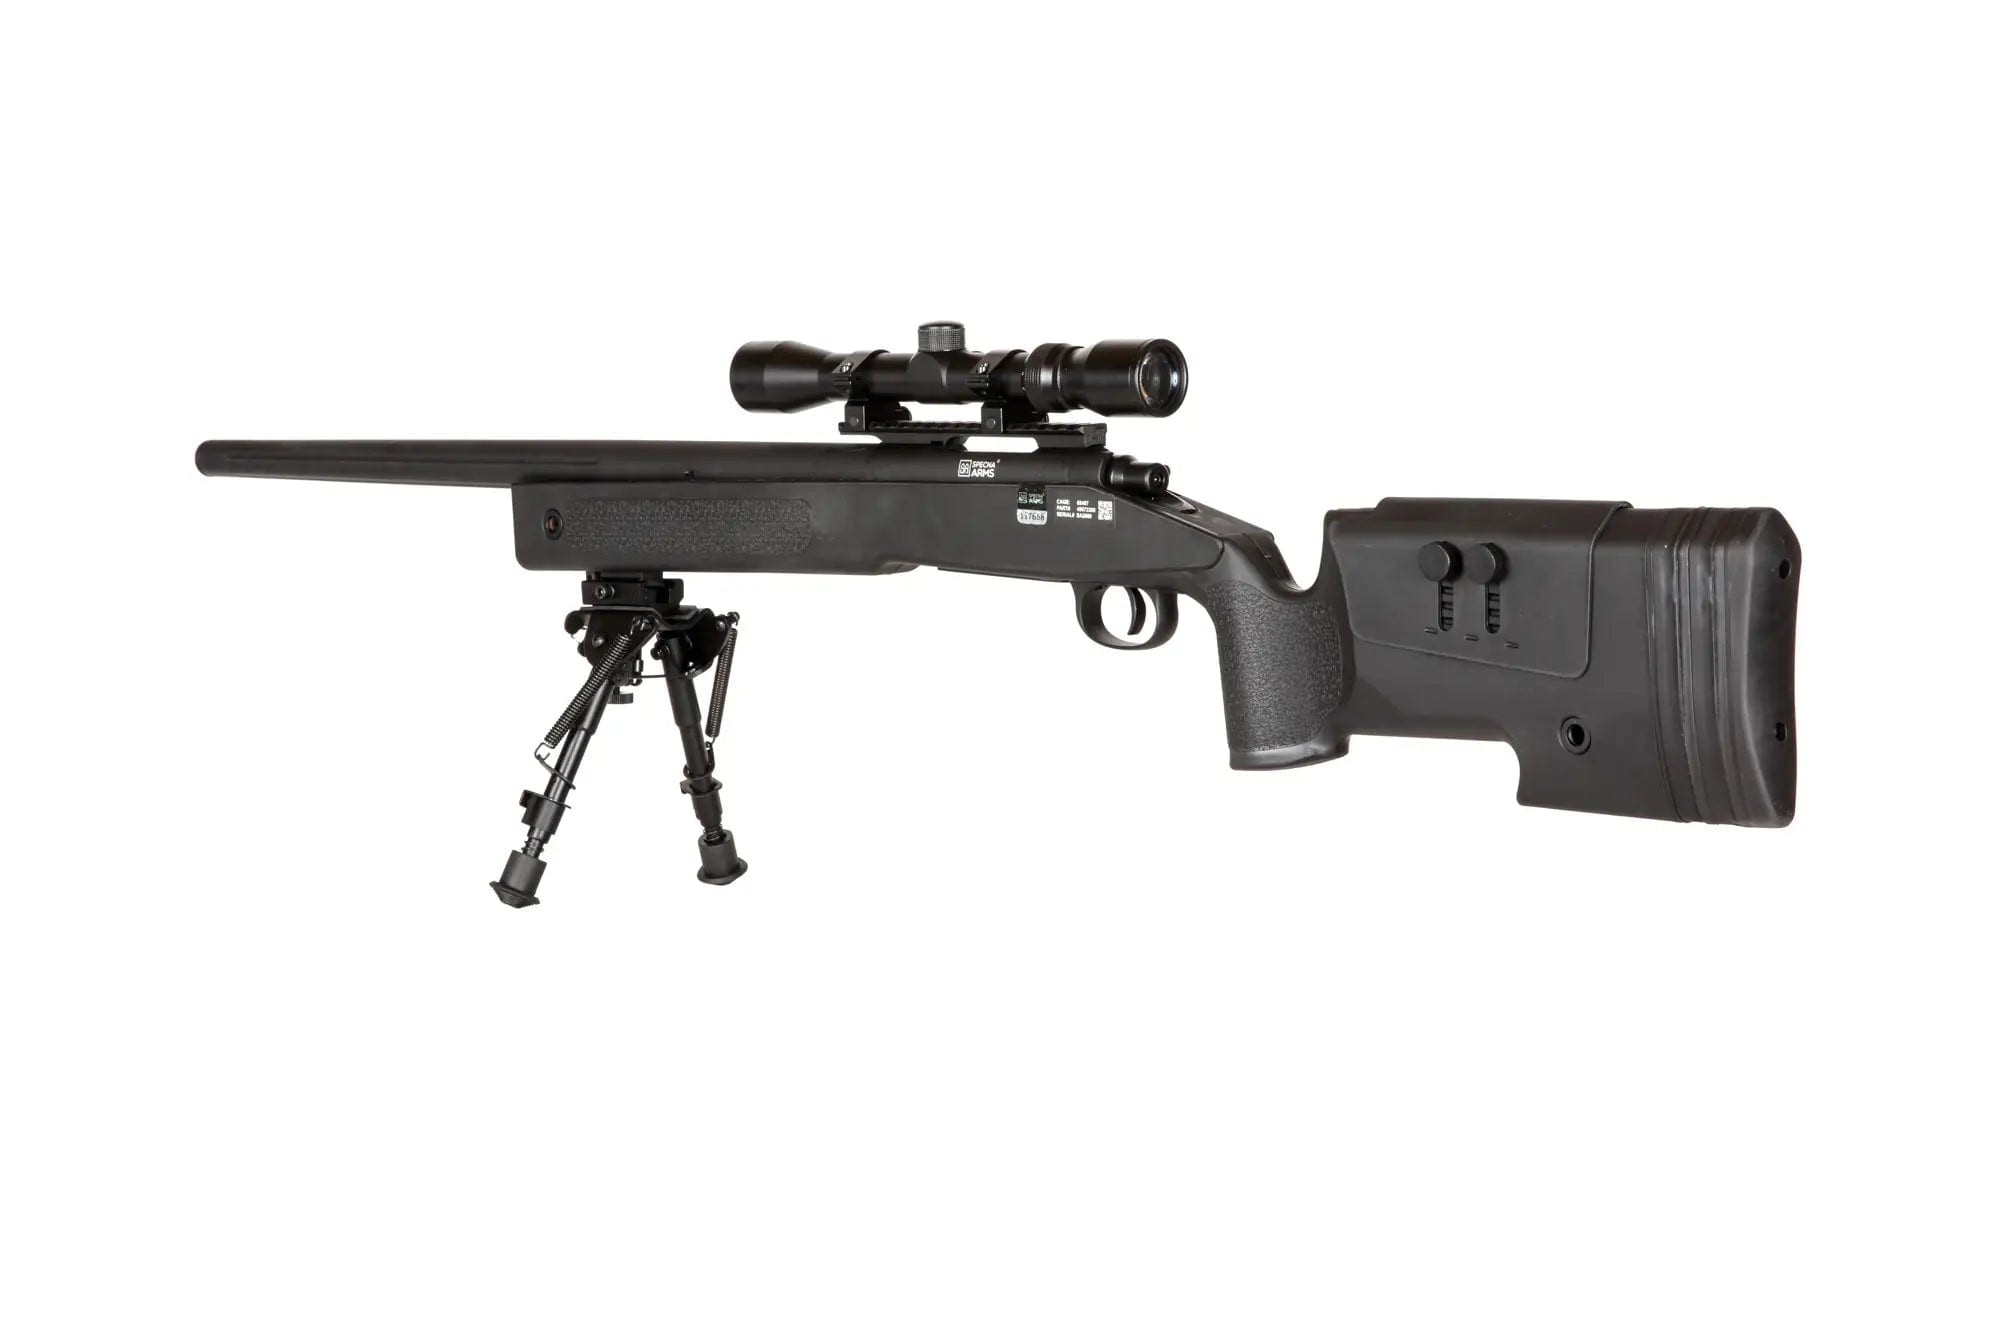 SA-S02 CORE High Velocity Sniper Rifle + Scope and Bipod - Black